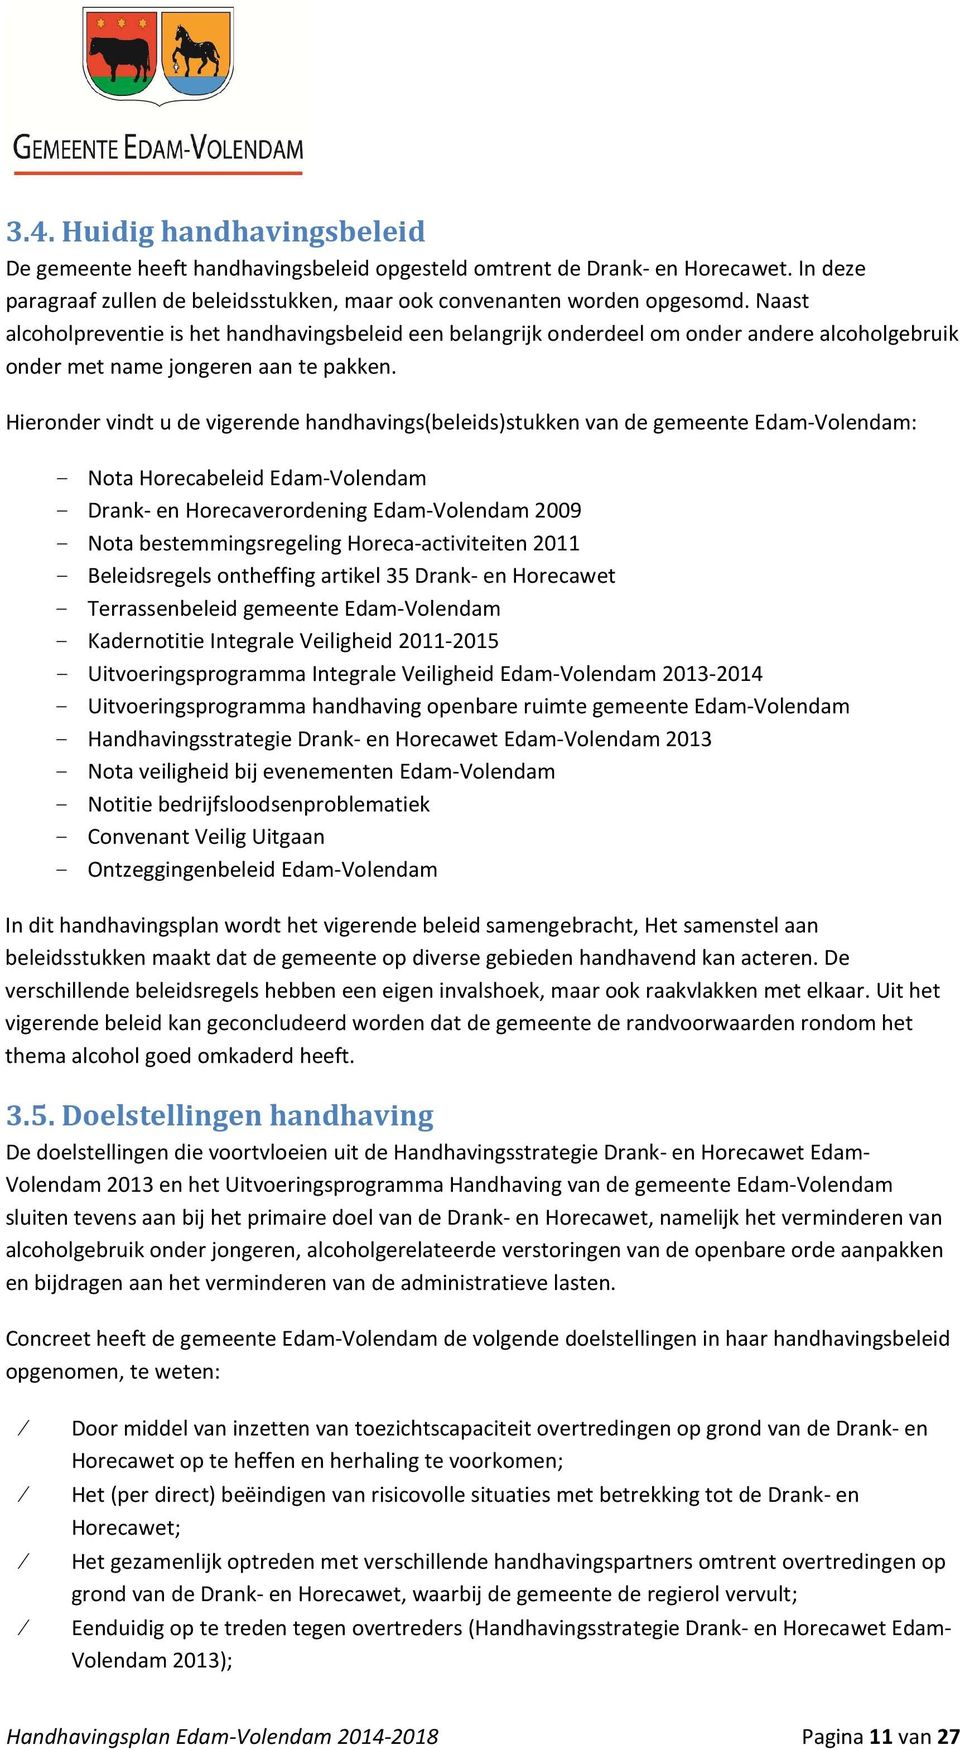 Hieronder vindt u de vigerende handhavings(beleids)stukken van de gemeente Edam-Volendam: - Nota Horecabeleid Edam-Volendam - Drank- en Horecaverordening Edam-Volendam 2009 - Nota bestemmingsregeling